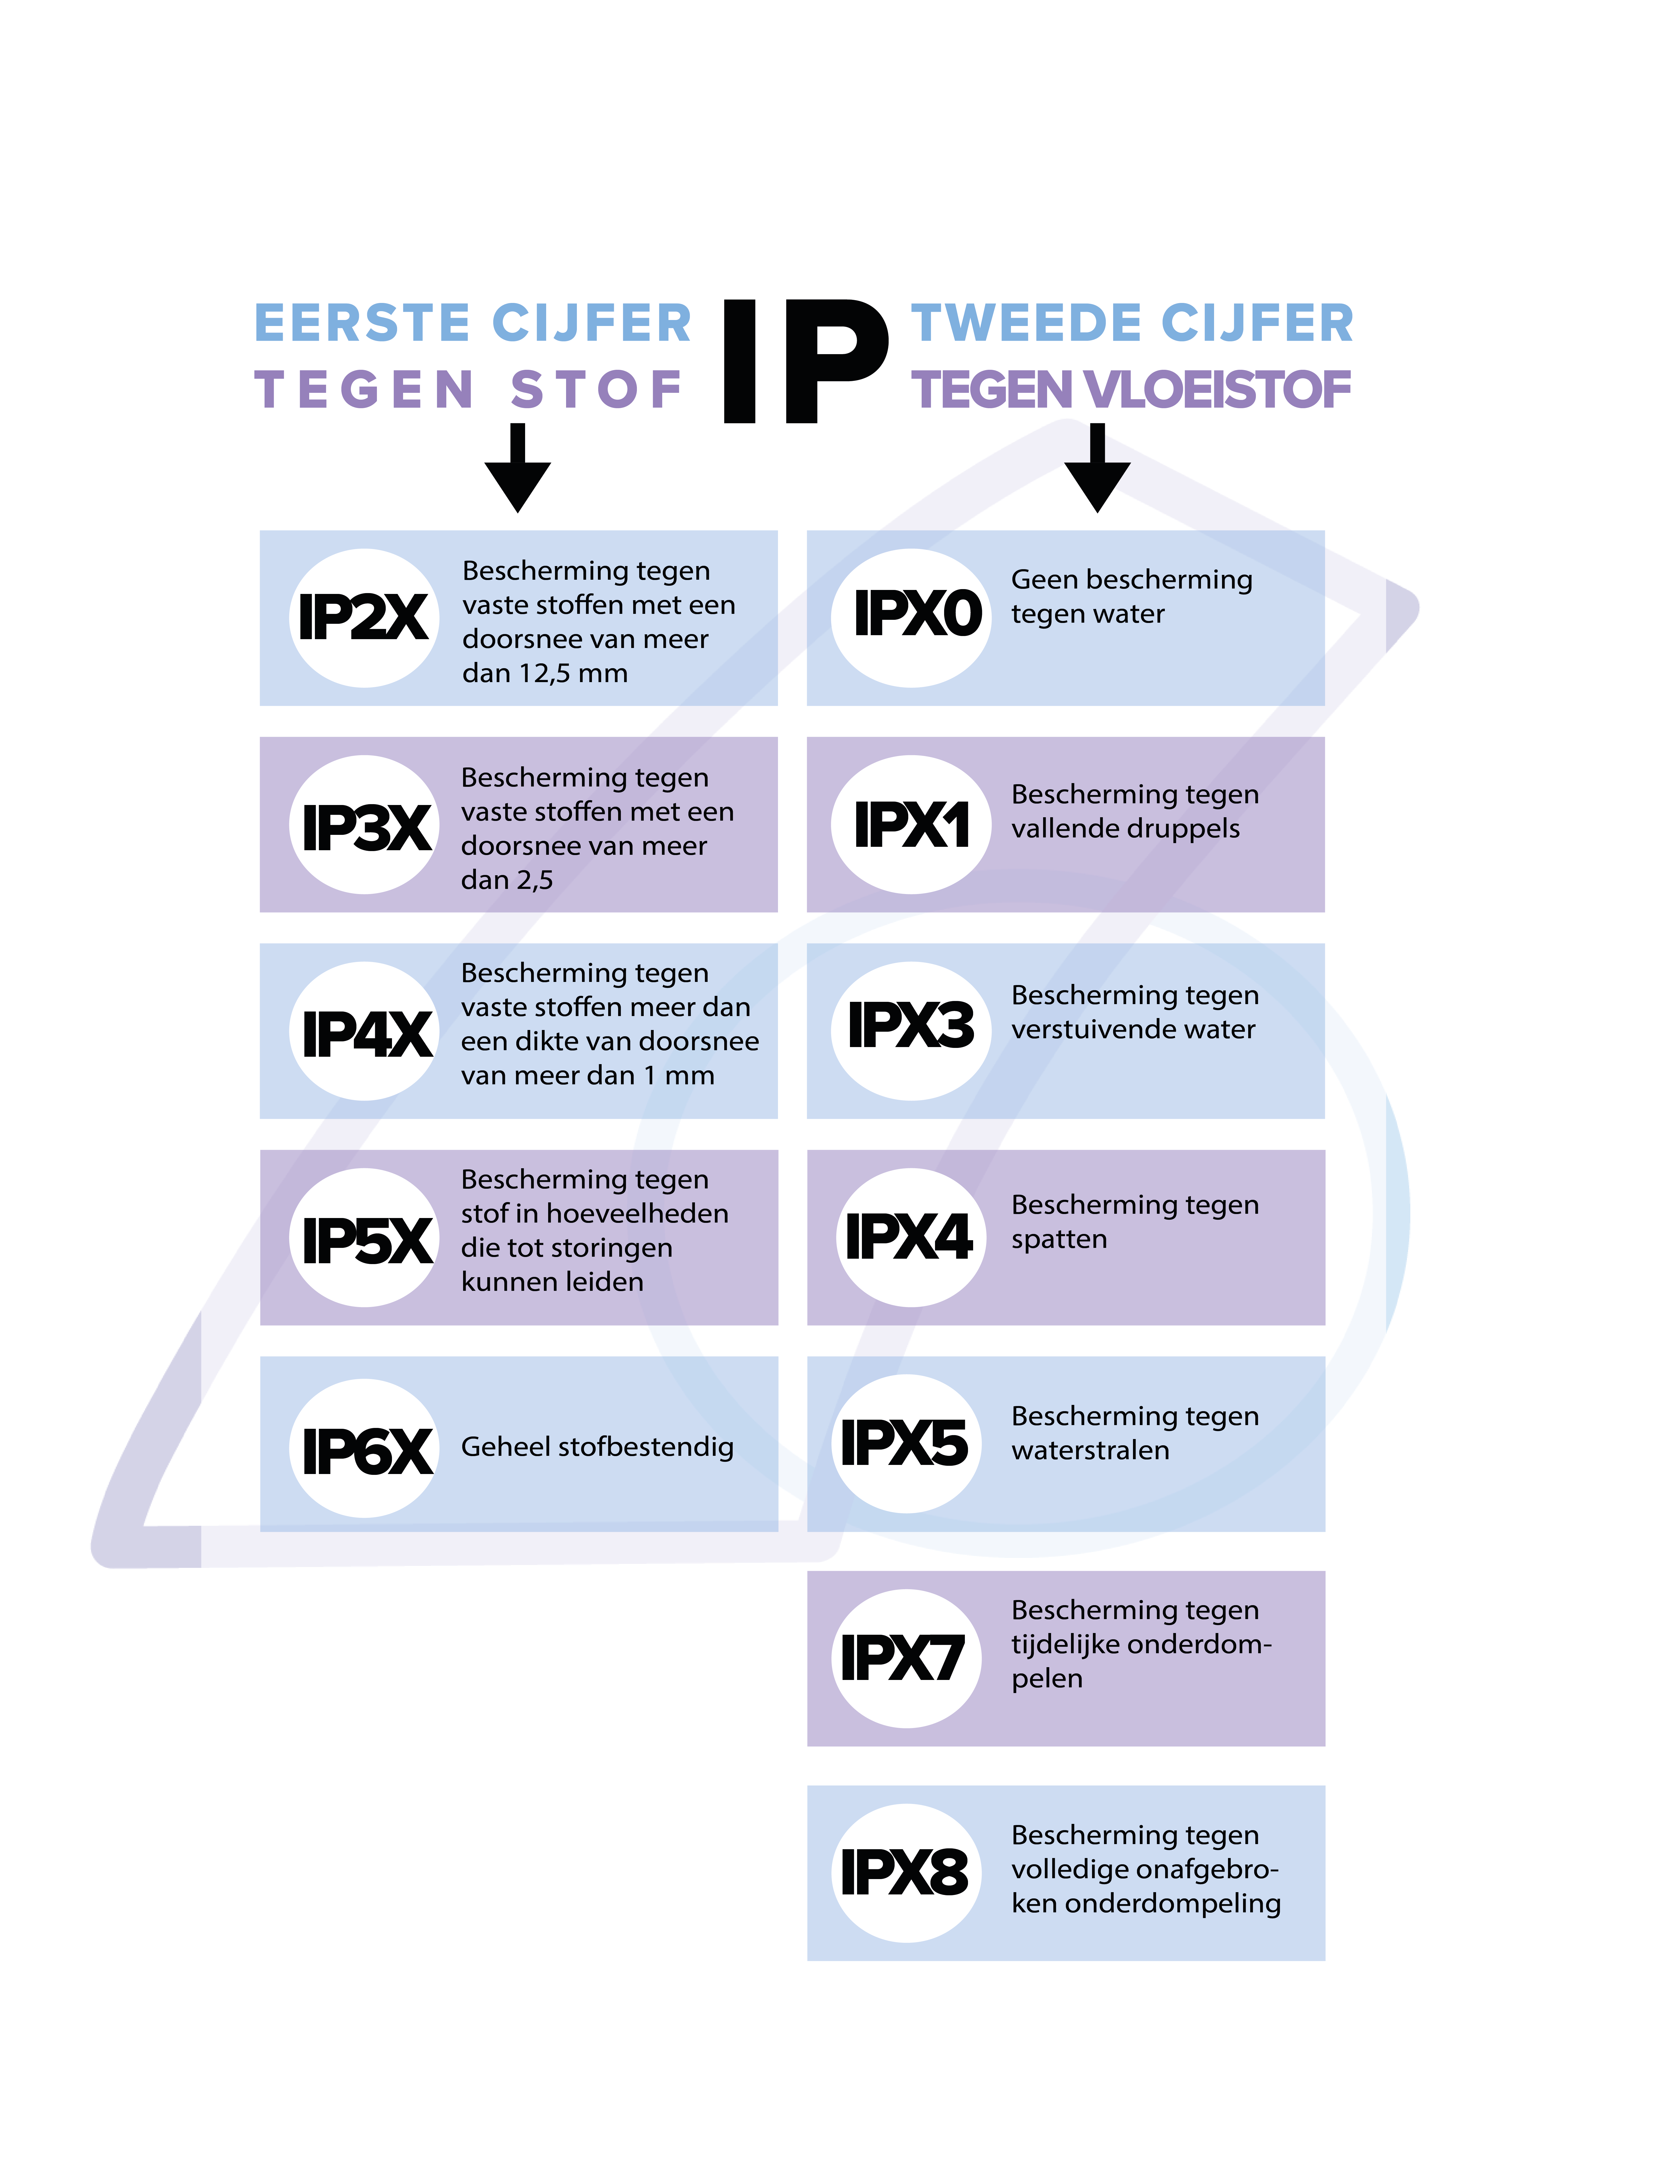 IP-waarden: uitleg in de